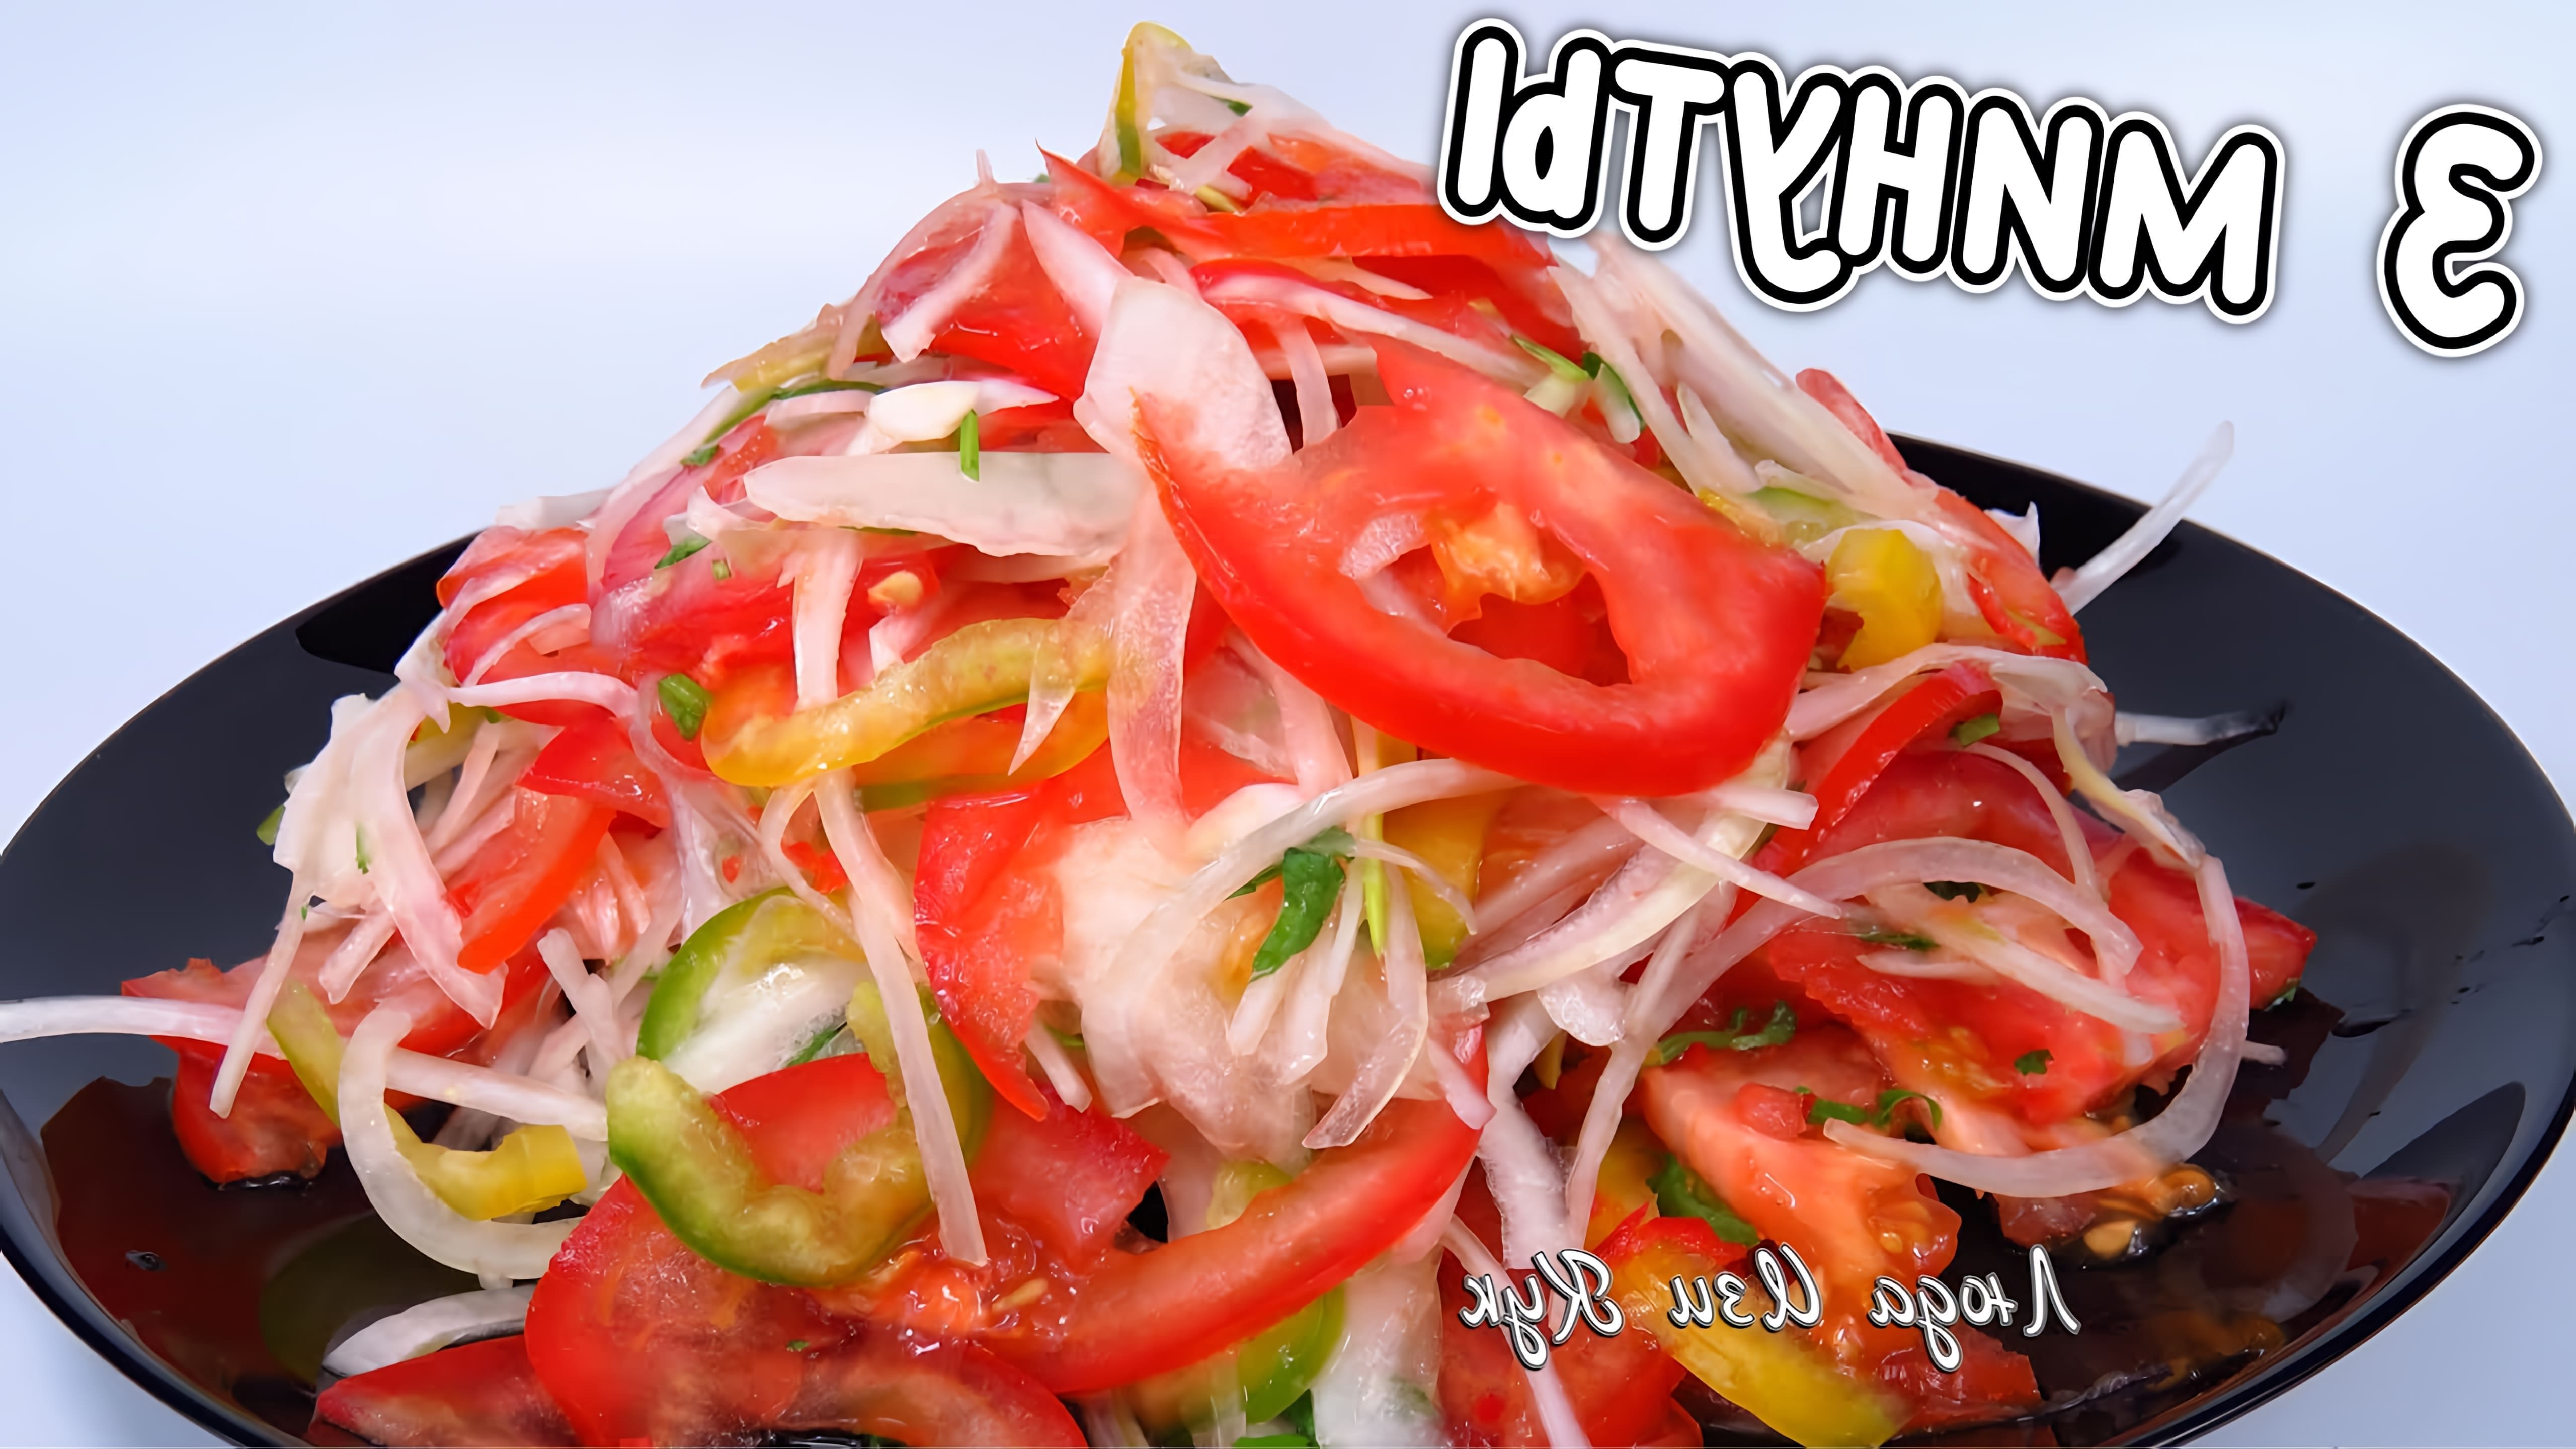 В этом видео Люда Изи Кук показывает, как приготовить салат ачик-чучук, который часто подают к мясным блюдам